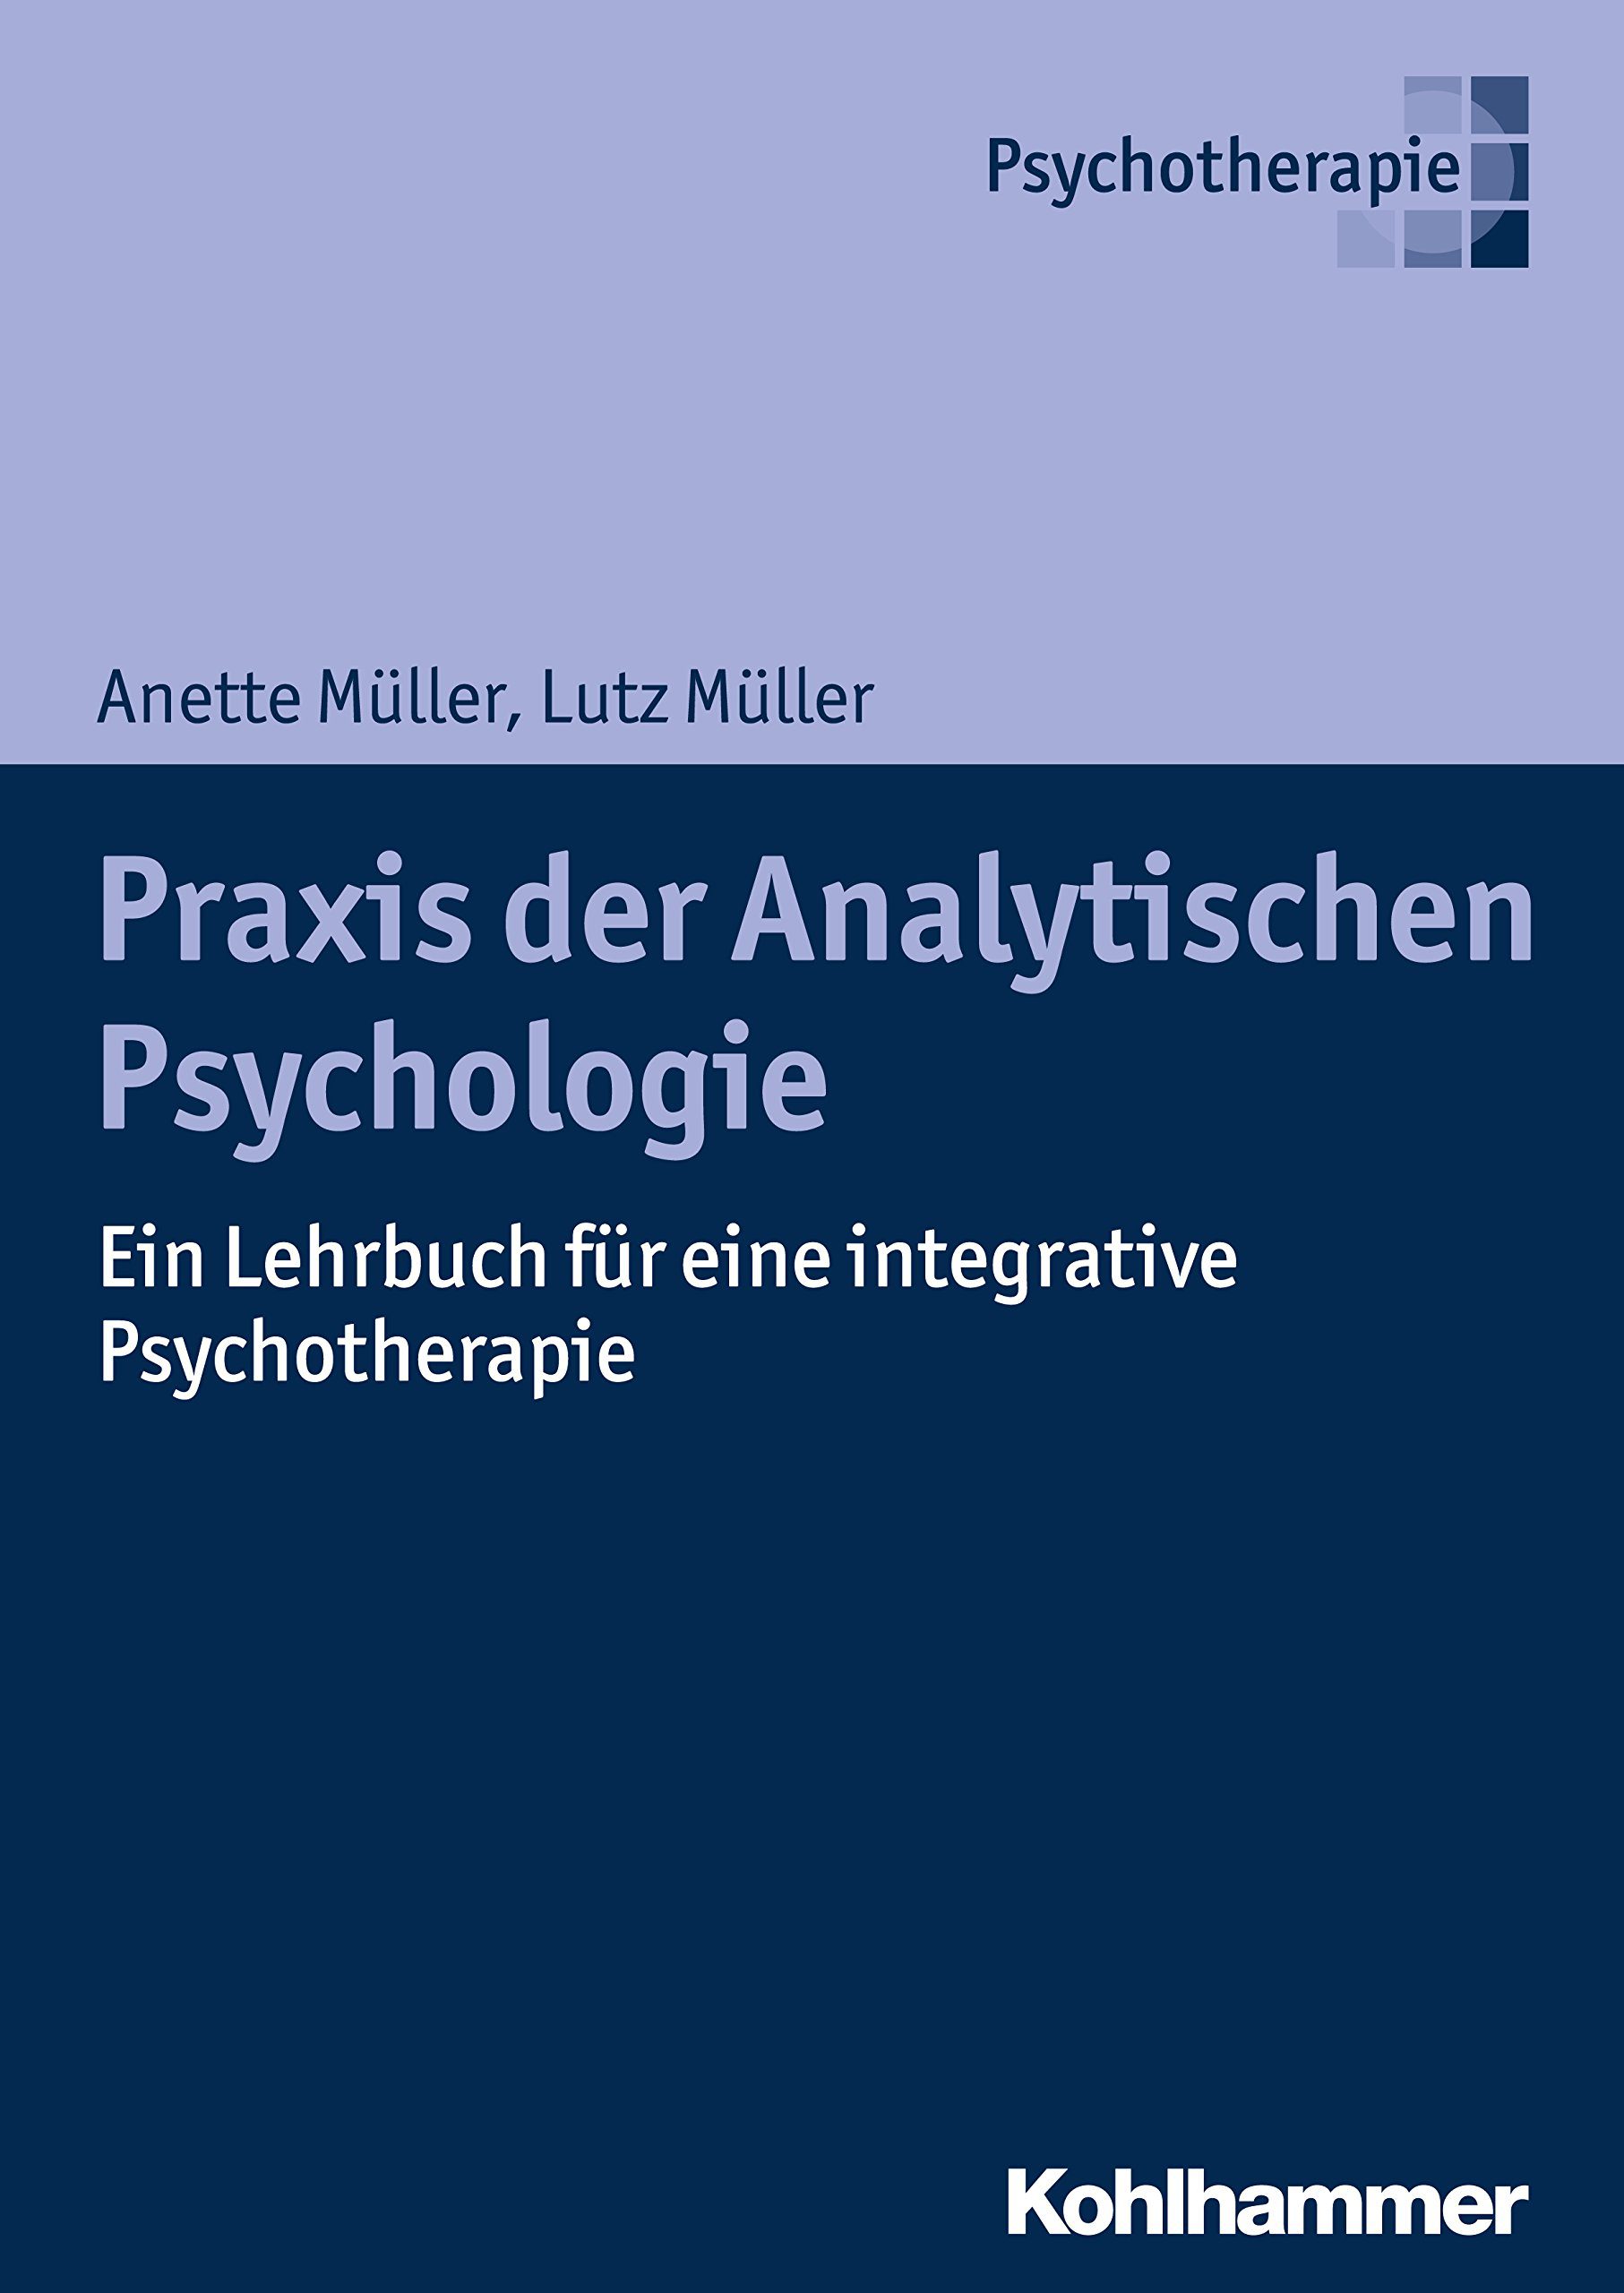 Praxis der analytischen Psychologie - Integrative Psychotherapie